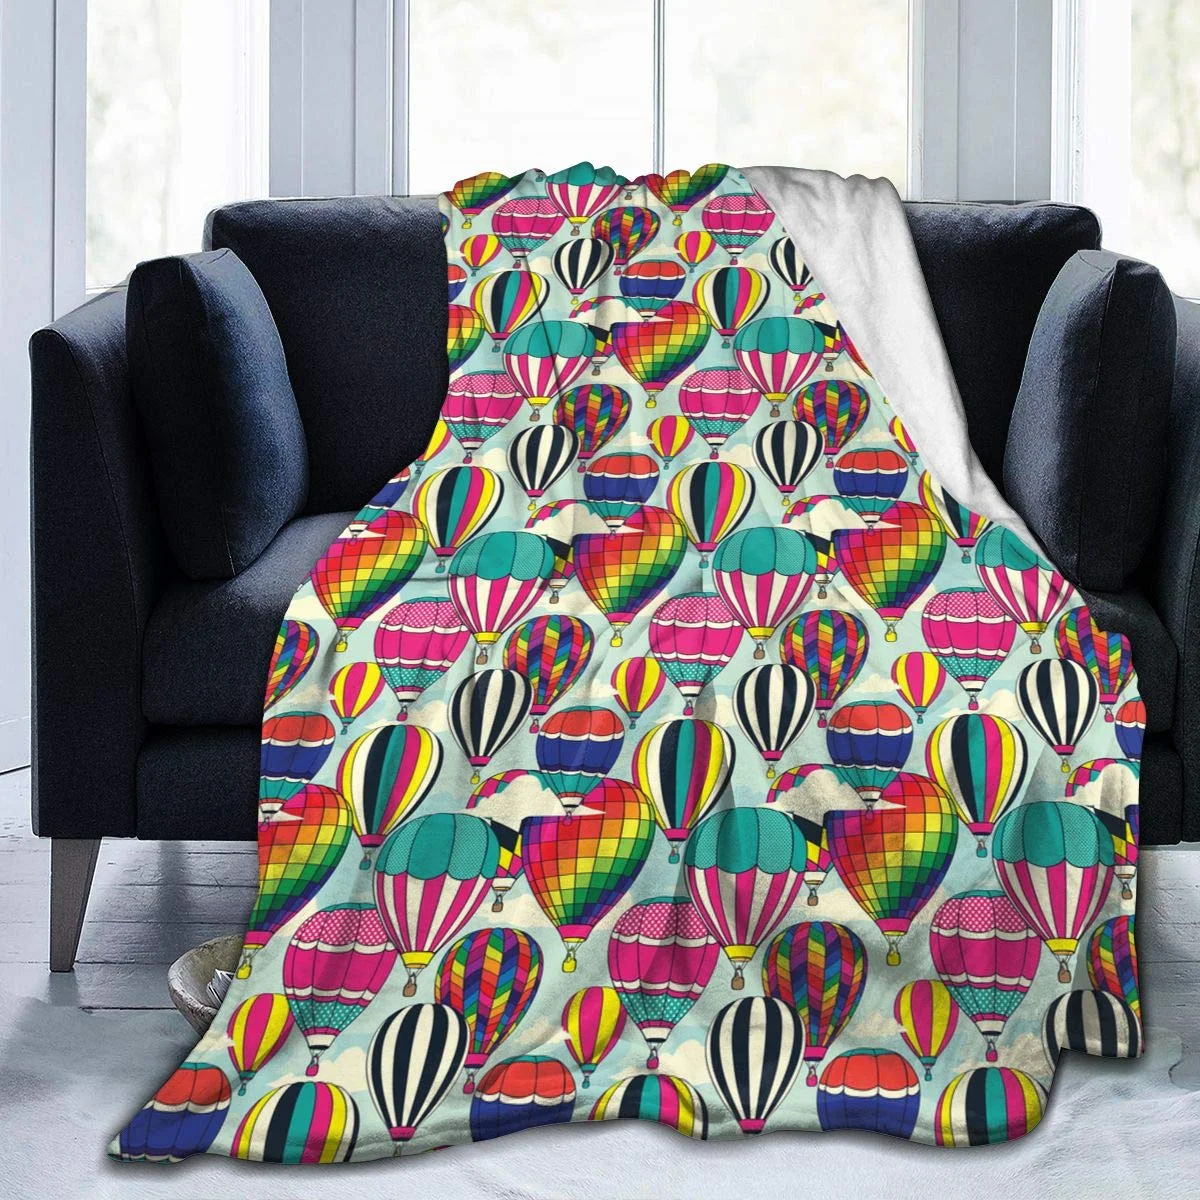 

Одеяло с животными, удобное легкое мягкое постельное белье для дивана, офиса, путешествий, пушистое плюшевое домашнее одеяло, цветные воздушные шары